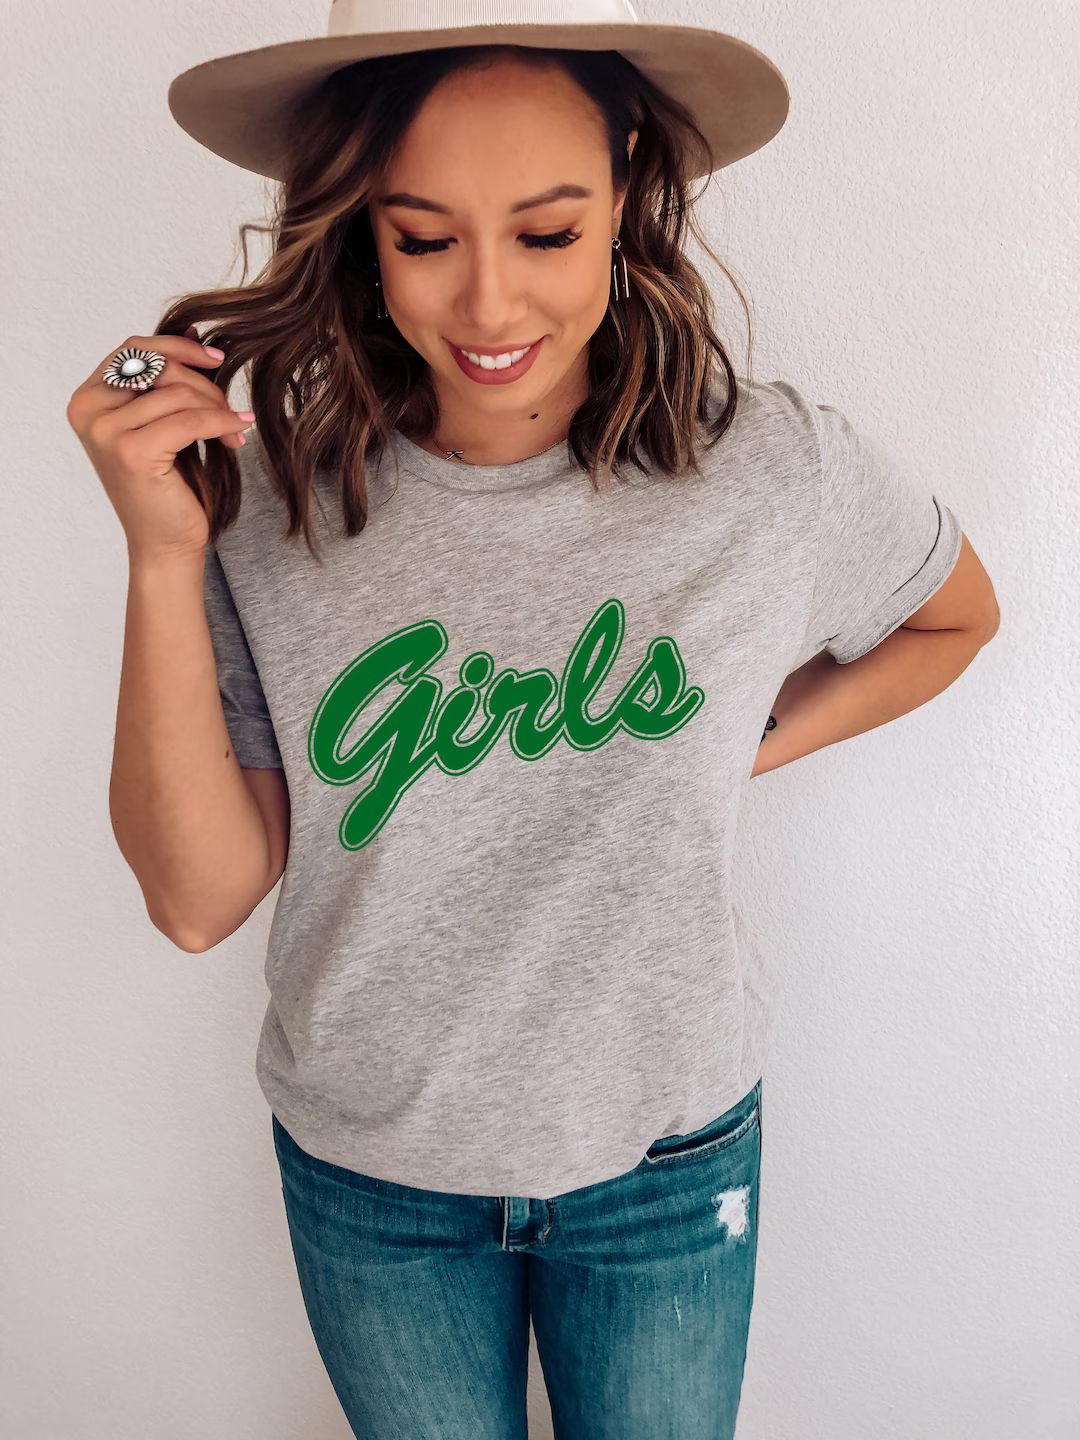 Girls Shirt, Friends Shirt, Women's Shirt, Birthday Girl Shirt, Girls Crew Shirt, Girls Holiday S... | Etsy (US)